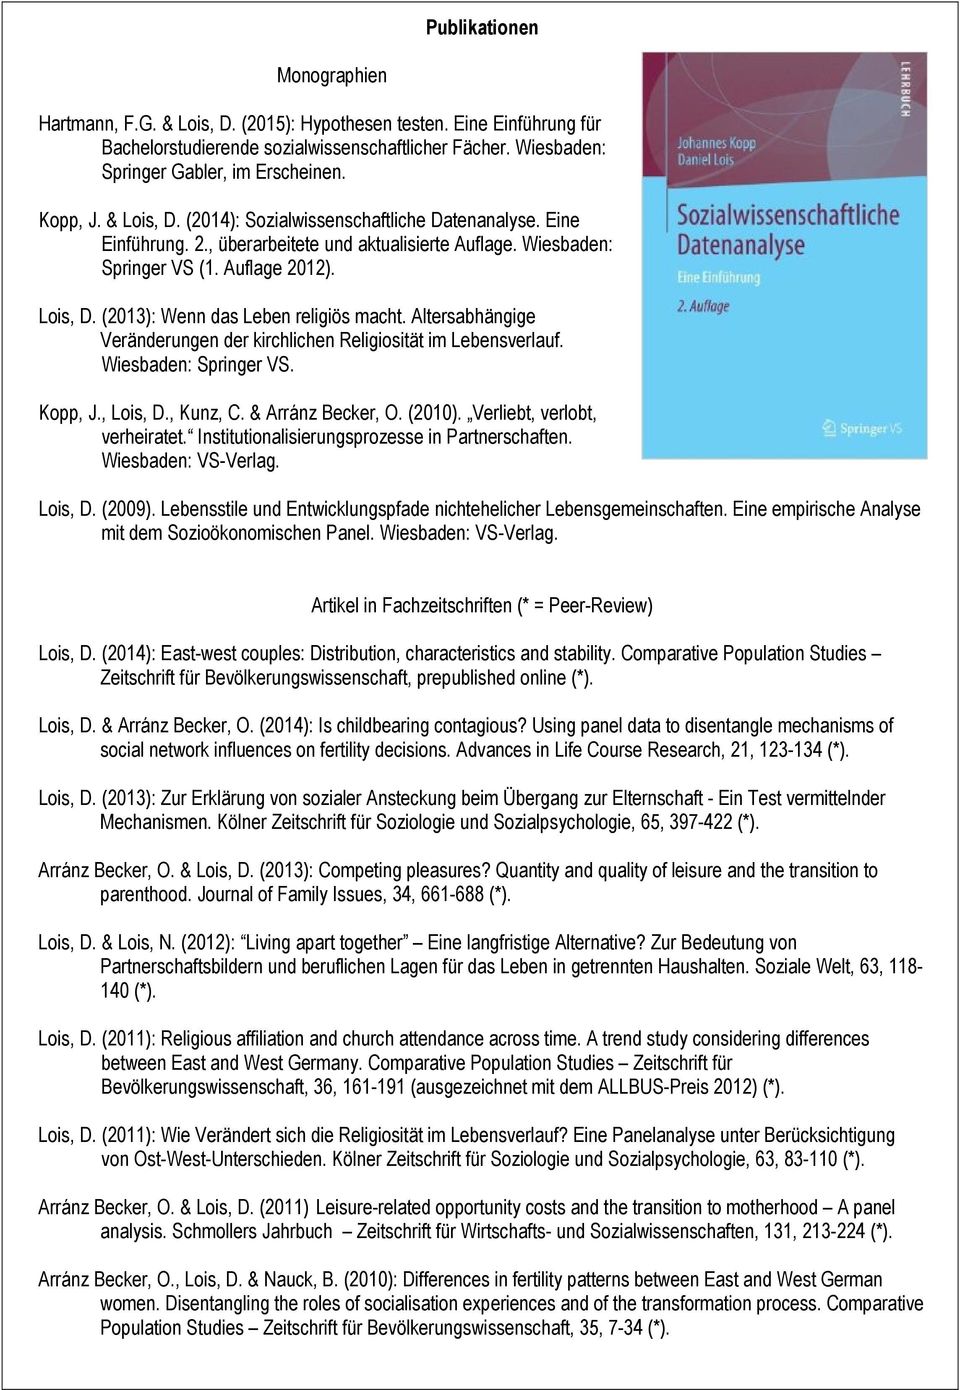 Altersabhängige Veränderungen der kirchlichen Religiosität im Lebensverlauf. Wiesbaden: Springer VS. Kopp, J., Lois, D., Kunz, C. & Arránz Becker, O. (2010). Verliebt, verlobt, verheiratet.